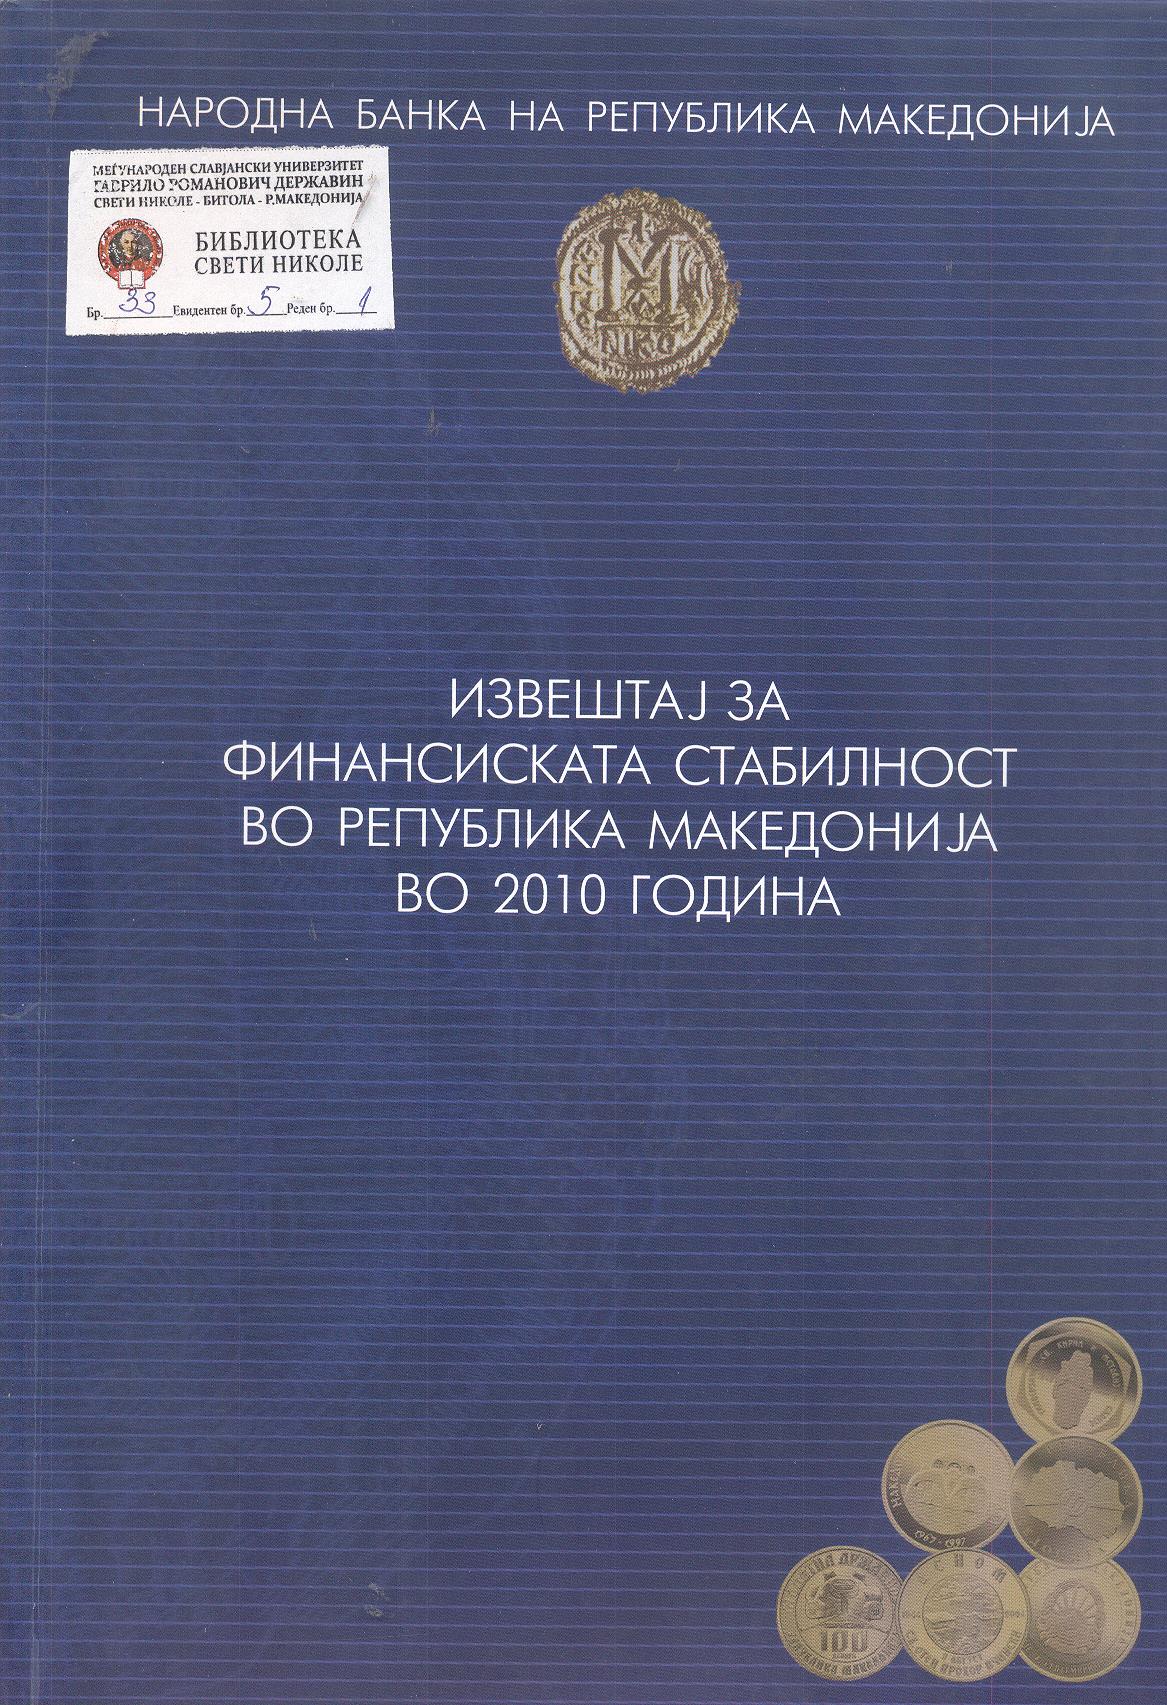 Извештај за финансиската стабилност во Република Македонија во 2010 година